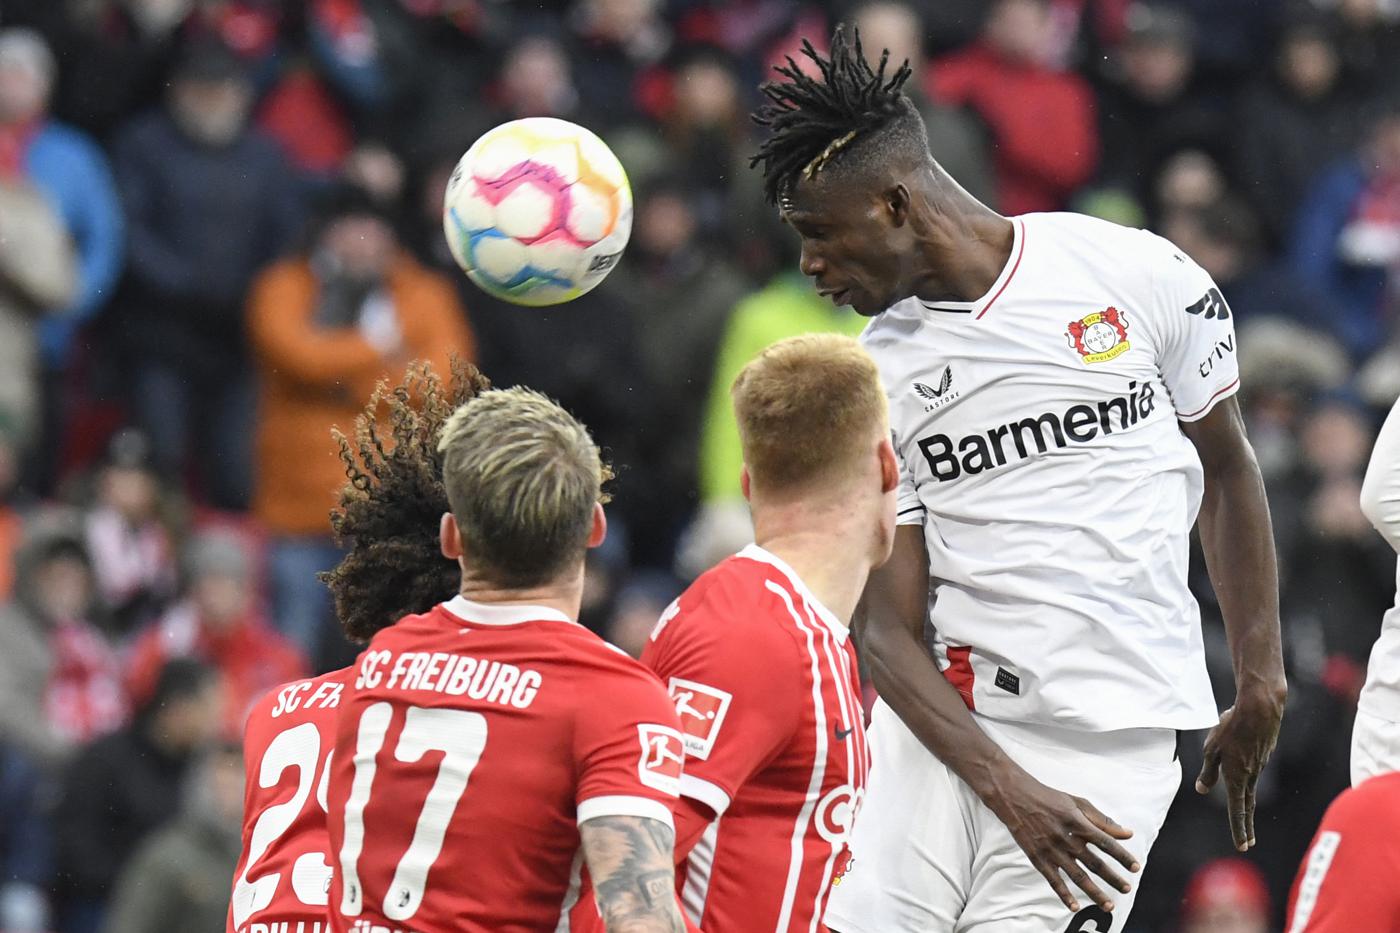 Freiburg v Bayer - 1-1. Mistrzostwo Niemiec, runda 22. Przegląd meczu, statystyki.